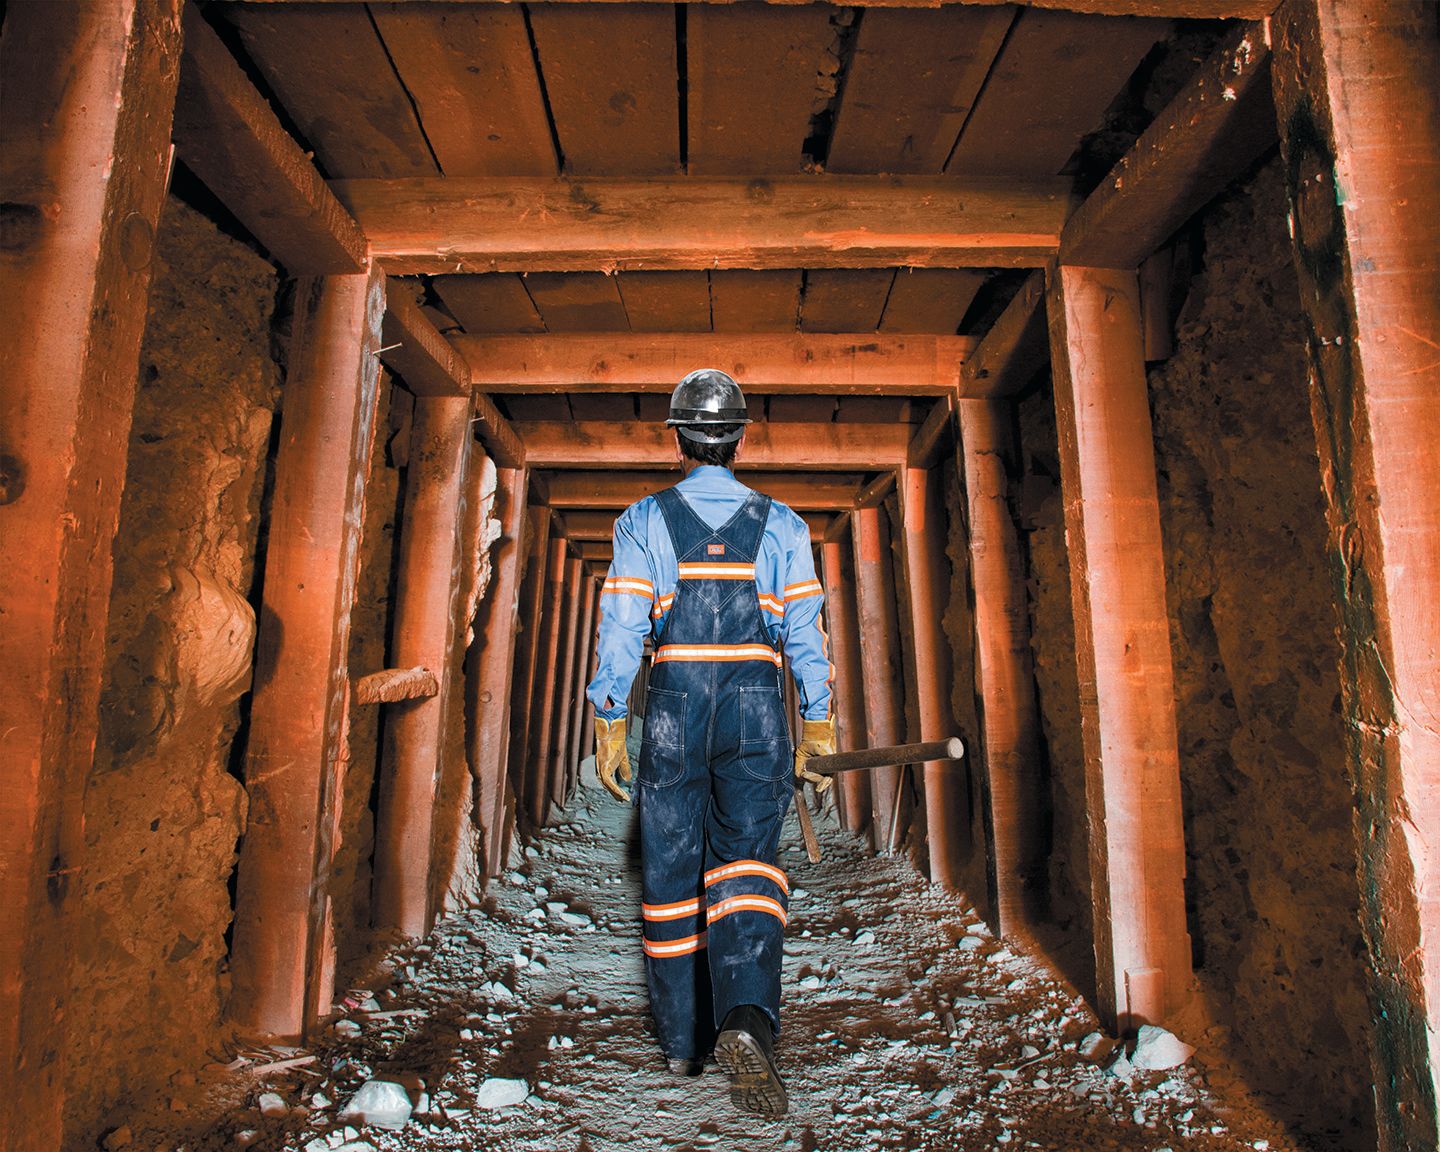 Industrial worker walking in a mine shaft.